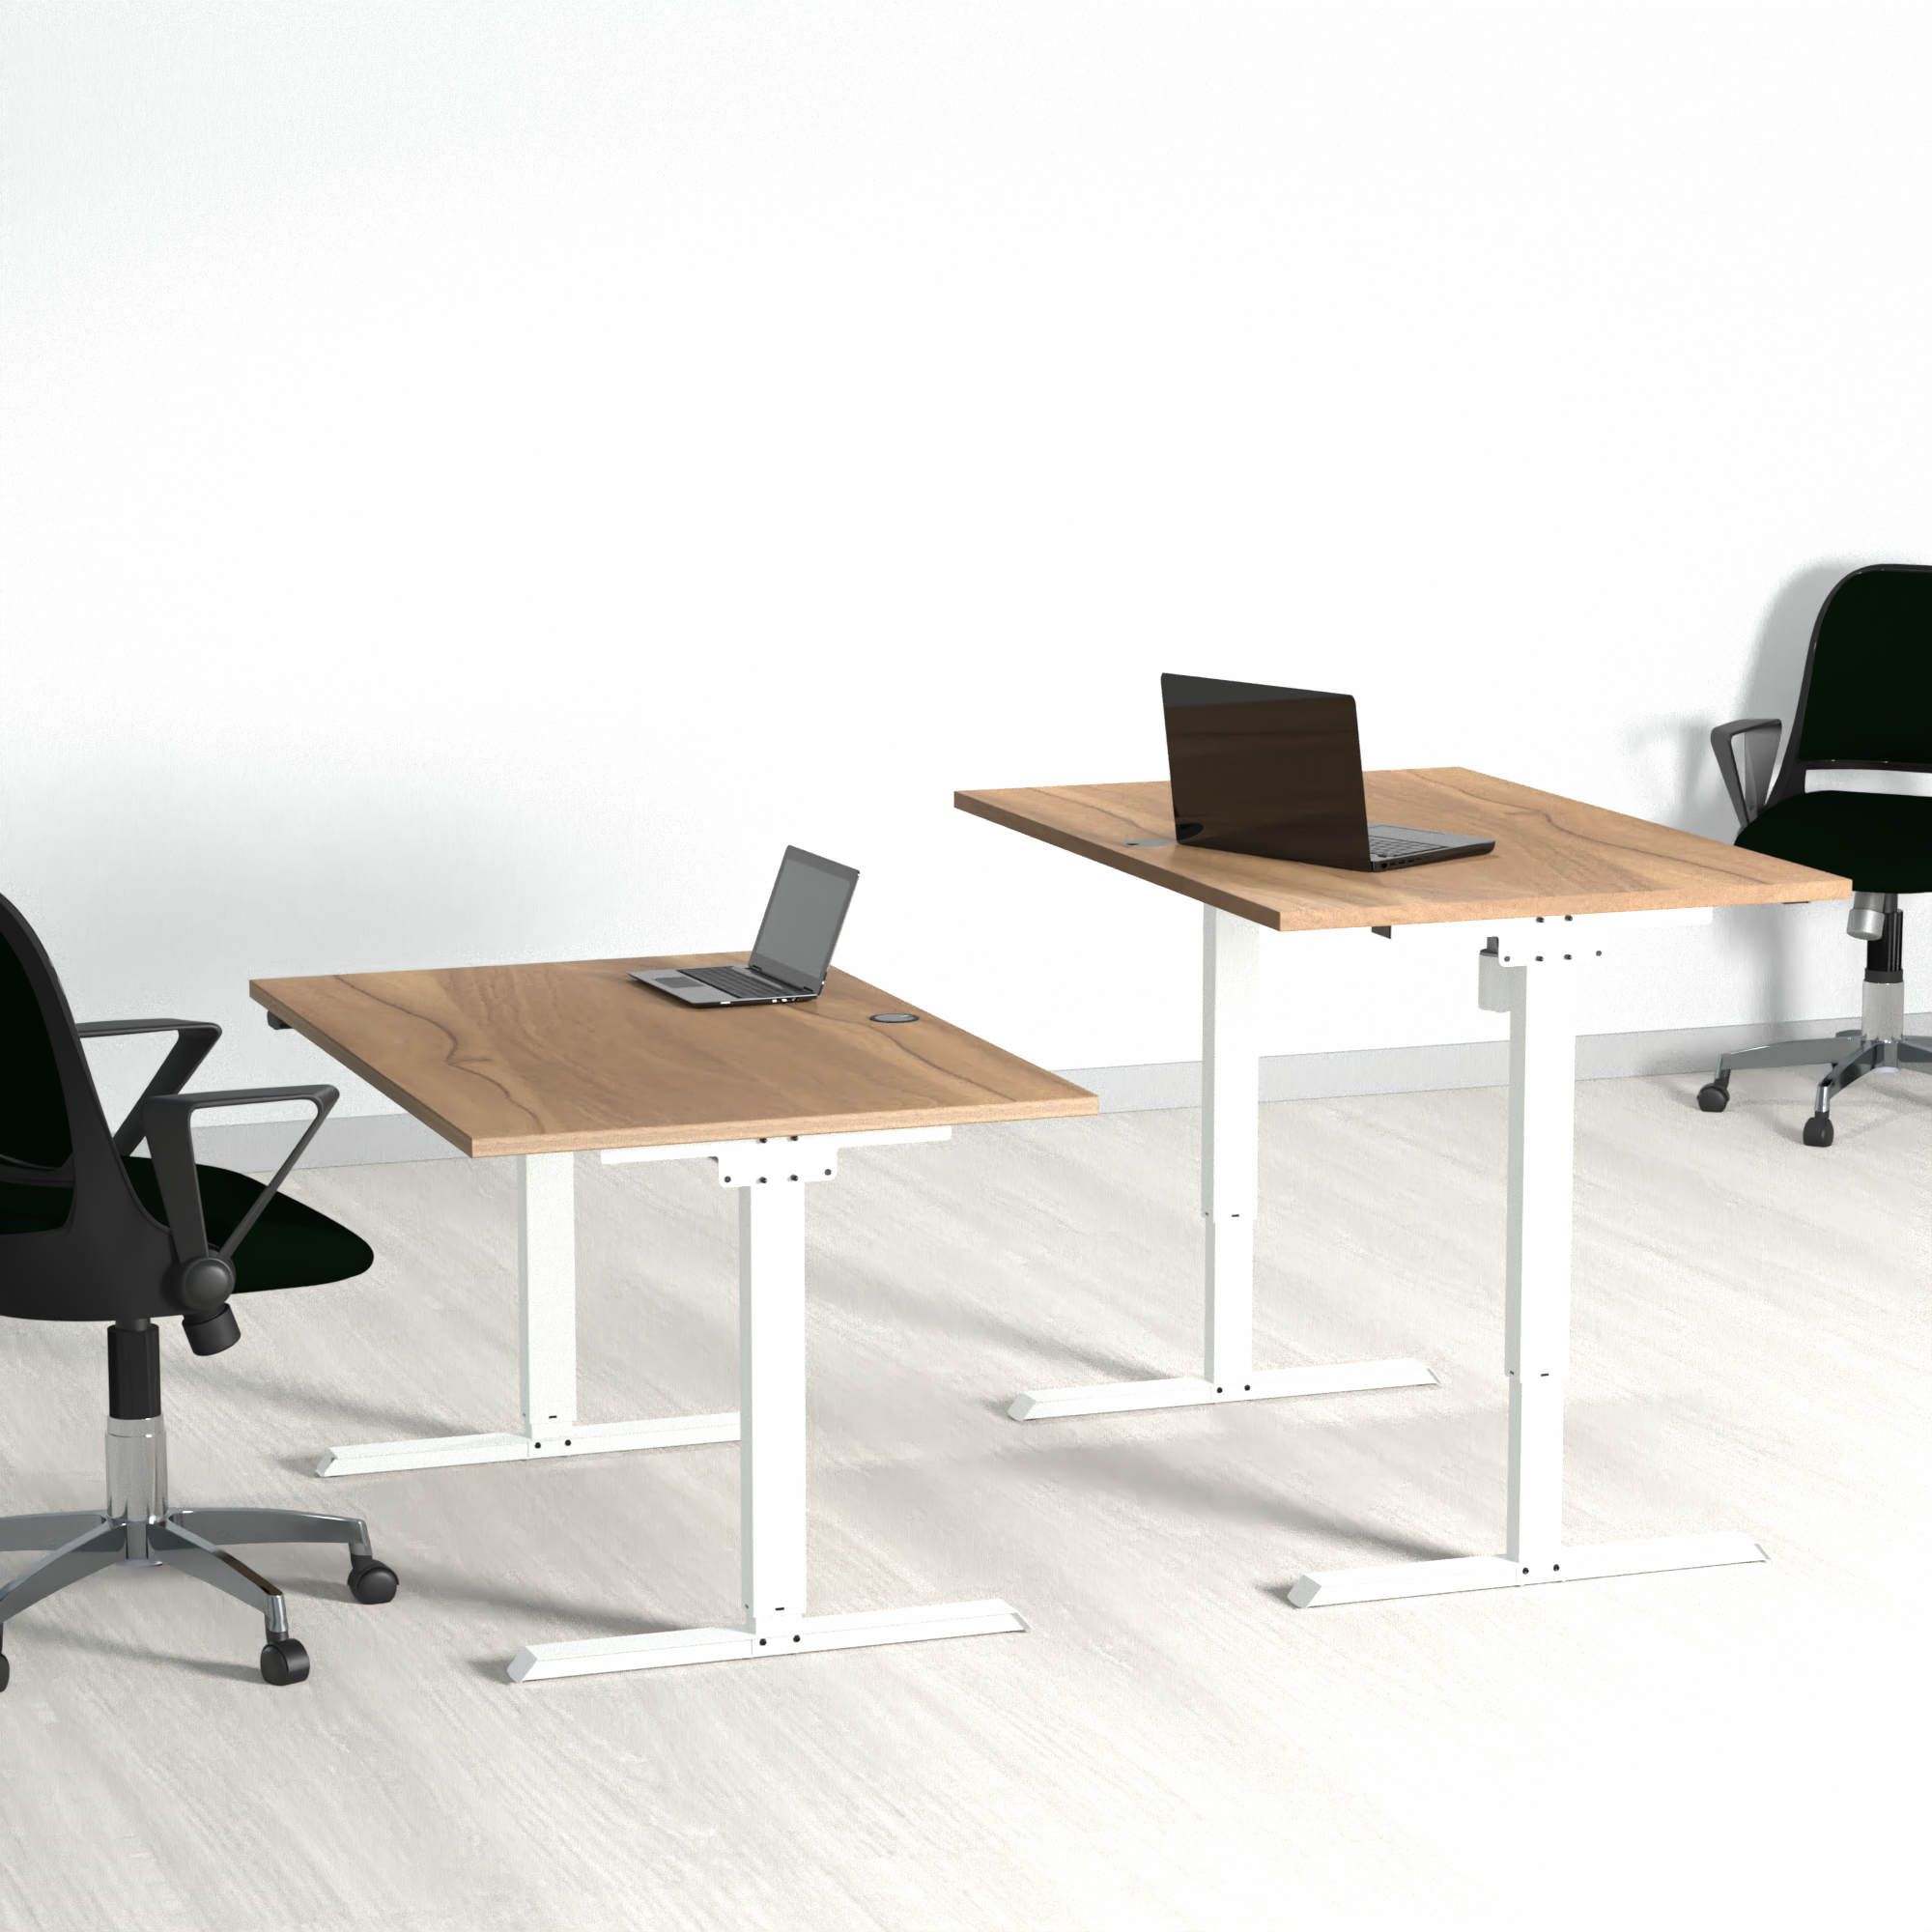 Schreibtisch steh/sitz | 160x80 cm | Nussbaum mit weißem Gestell